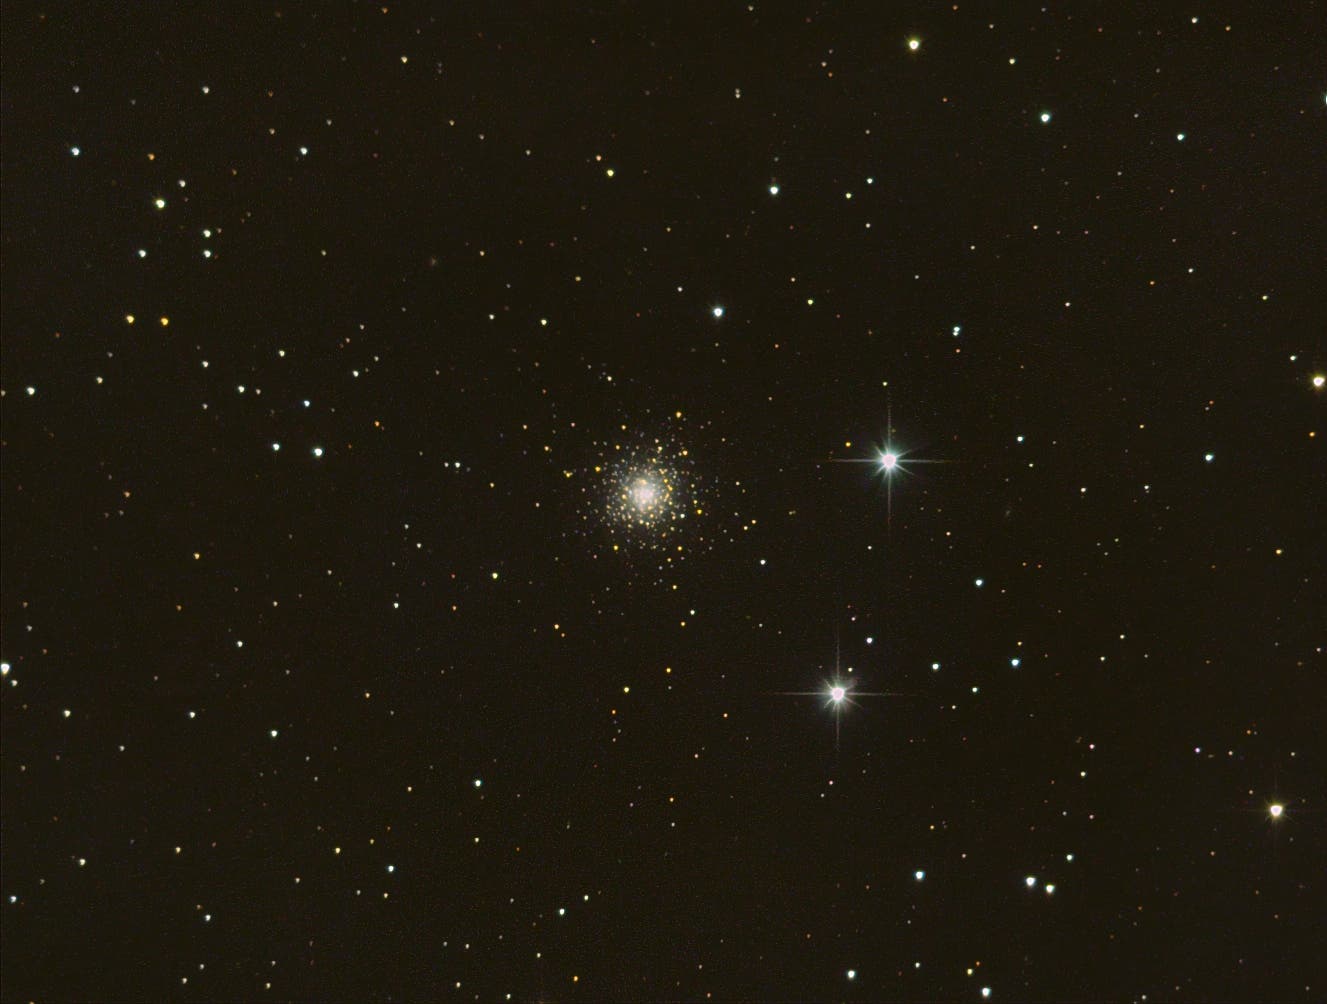 Aller guten Dinge sind drei: der Kugelsternhaufen NGC 6229 im Herkules